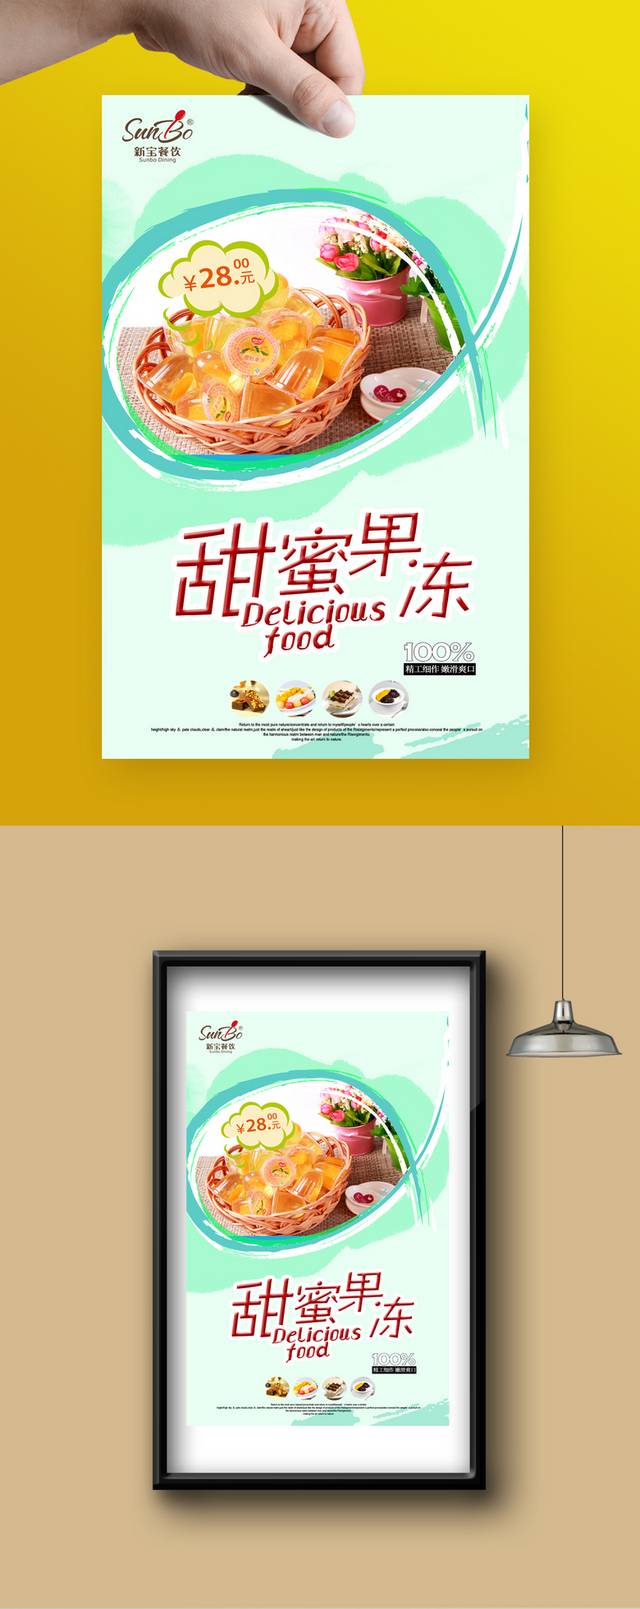 清新高档果冻零食宣传海报设计模板psd